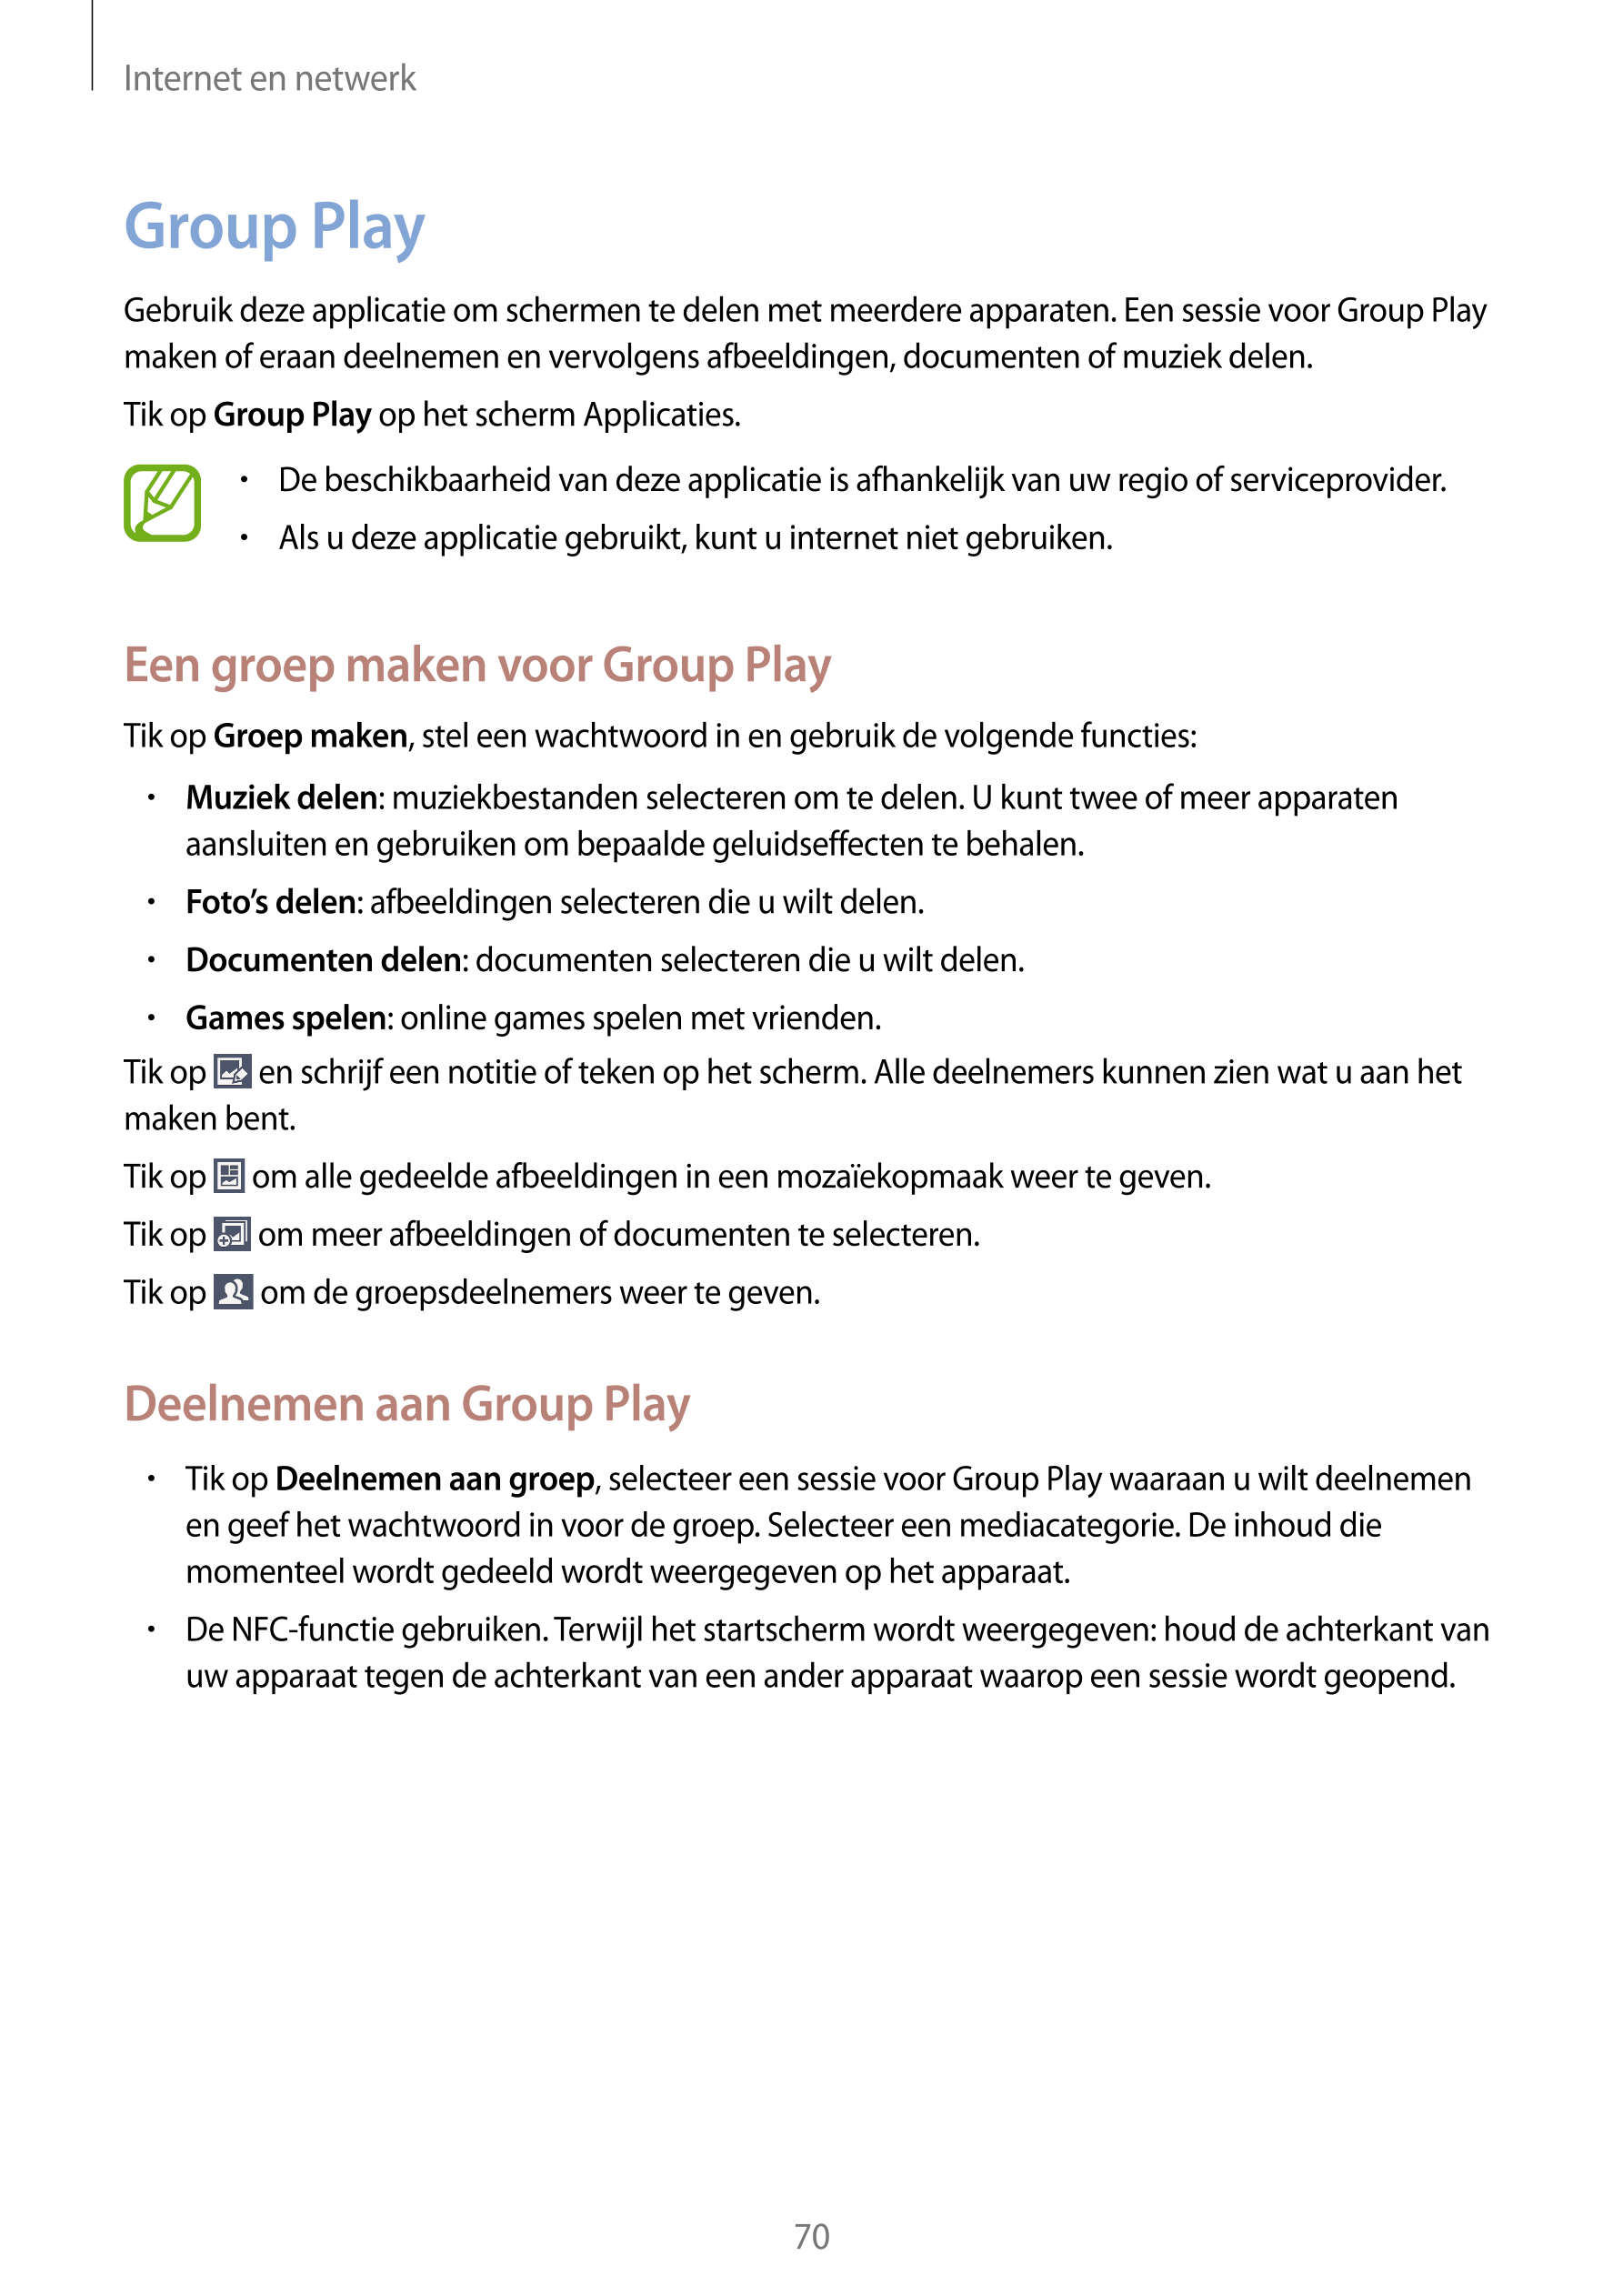 Internet en netwerk
Group Play
Gebruik deze applicatie om schermen te delen met meerdere apparaten. Een sessie voor Group Play 
